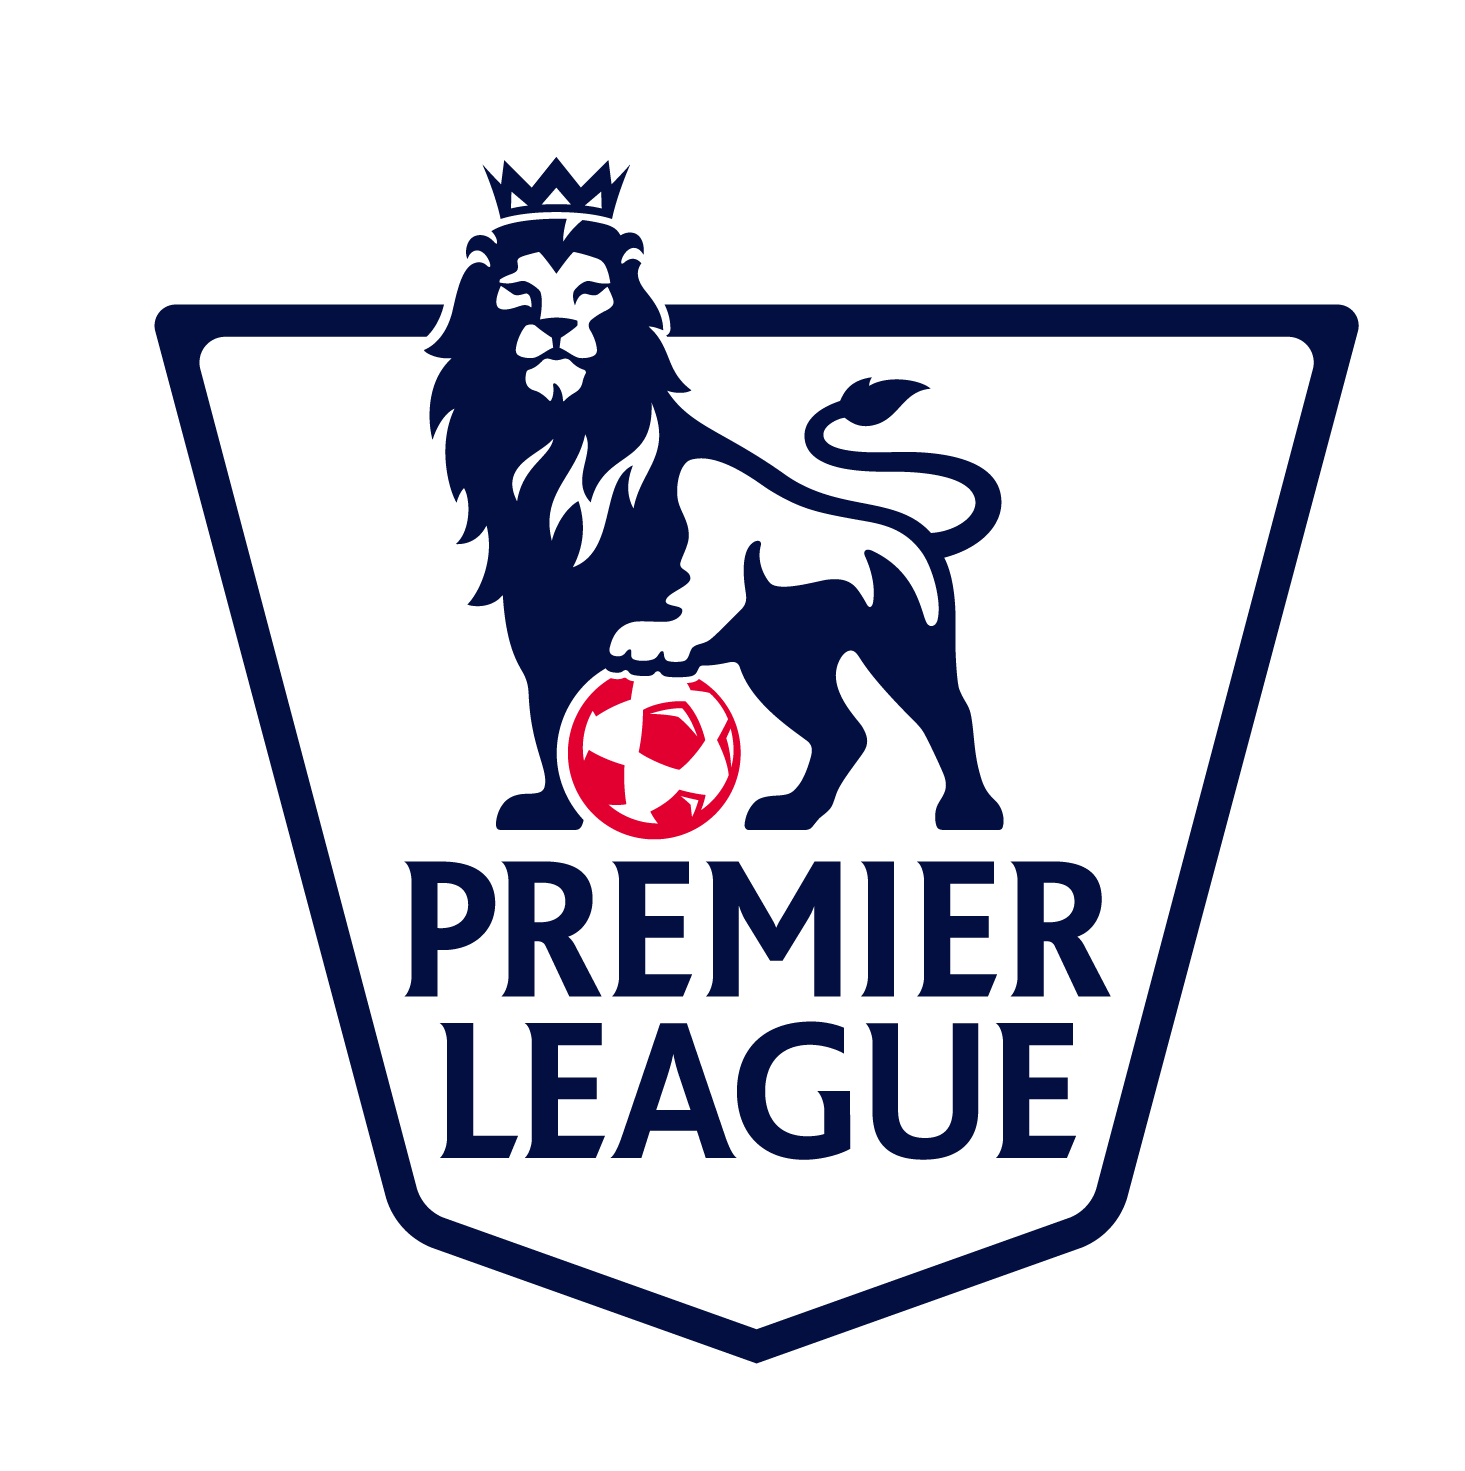 Premier League Logo PNG Transparent Images #136621 1465x1471 Pixel ...